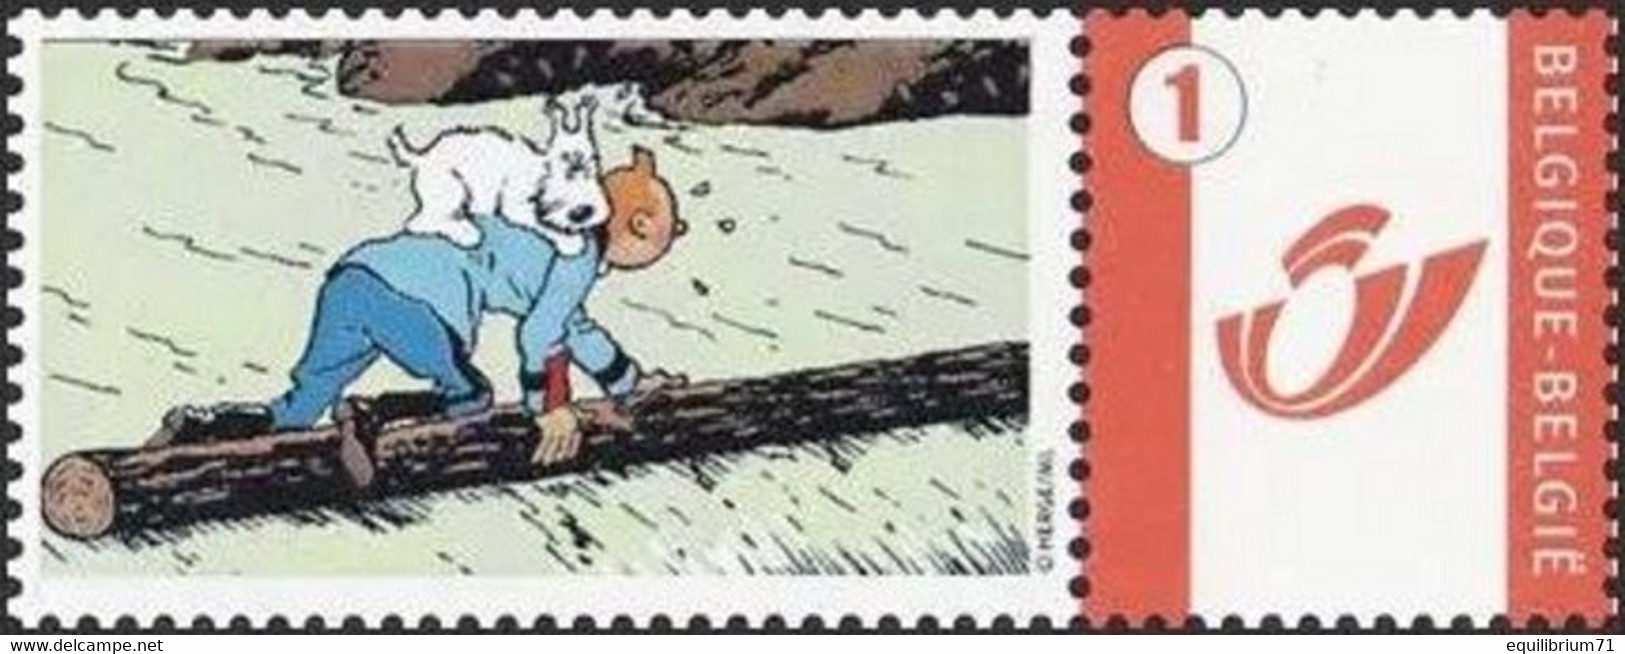 DUOSTAMP** / MYSTAMP**-  Tintin / Kuifje / Tim - En Danger / In Gevaar / In Gefahr / In Danger / (Hergé) - Mint